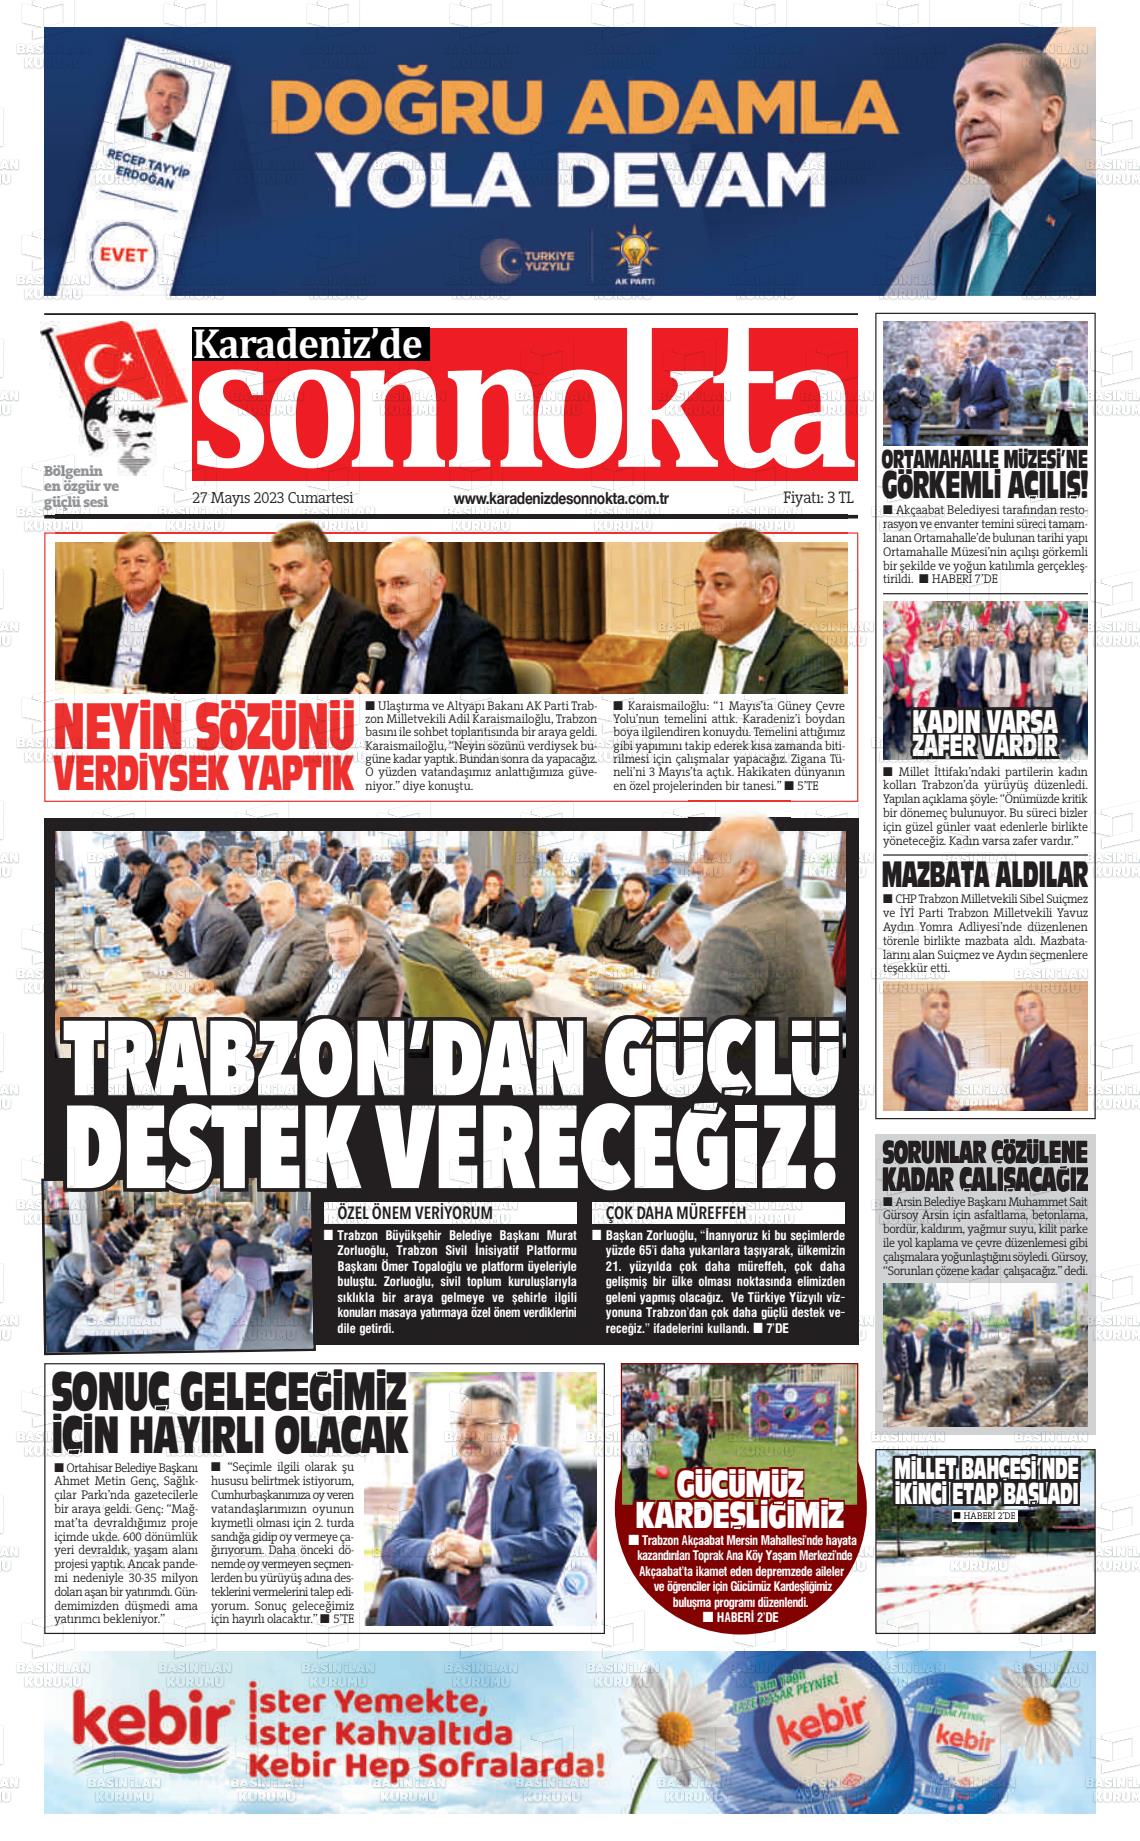 27 Mayıs 2023 Karadeniz'de Sonnokta Gazete Manşeti